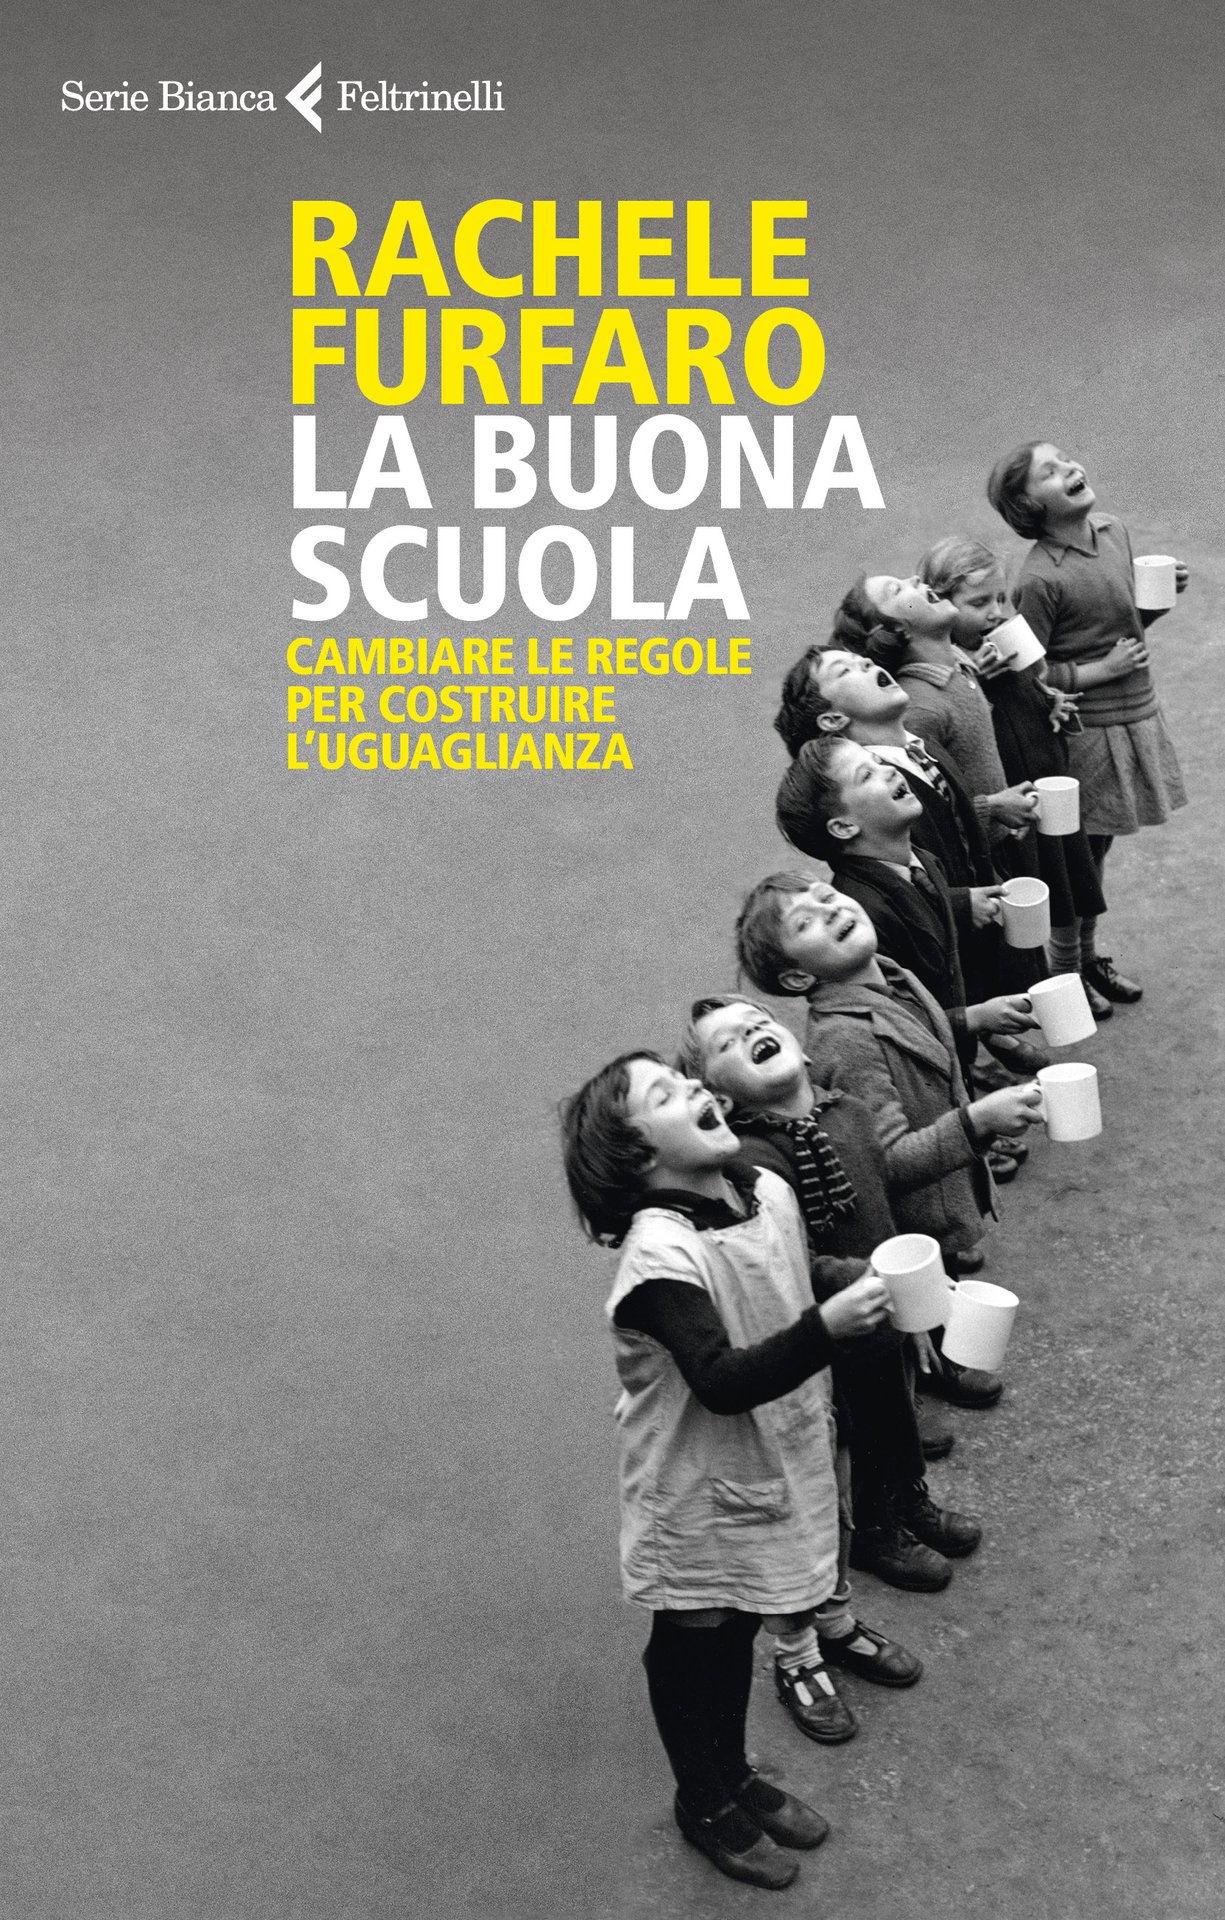 Rachele Furfaro presenta "La buona scuola"  a Brescia